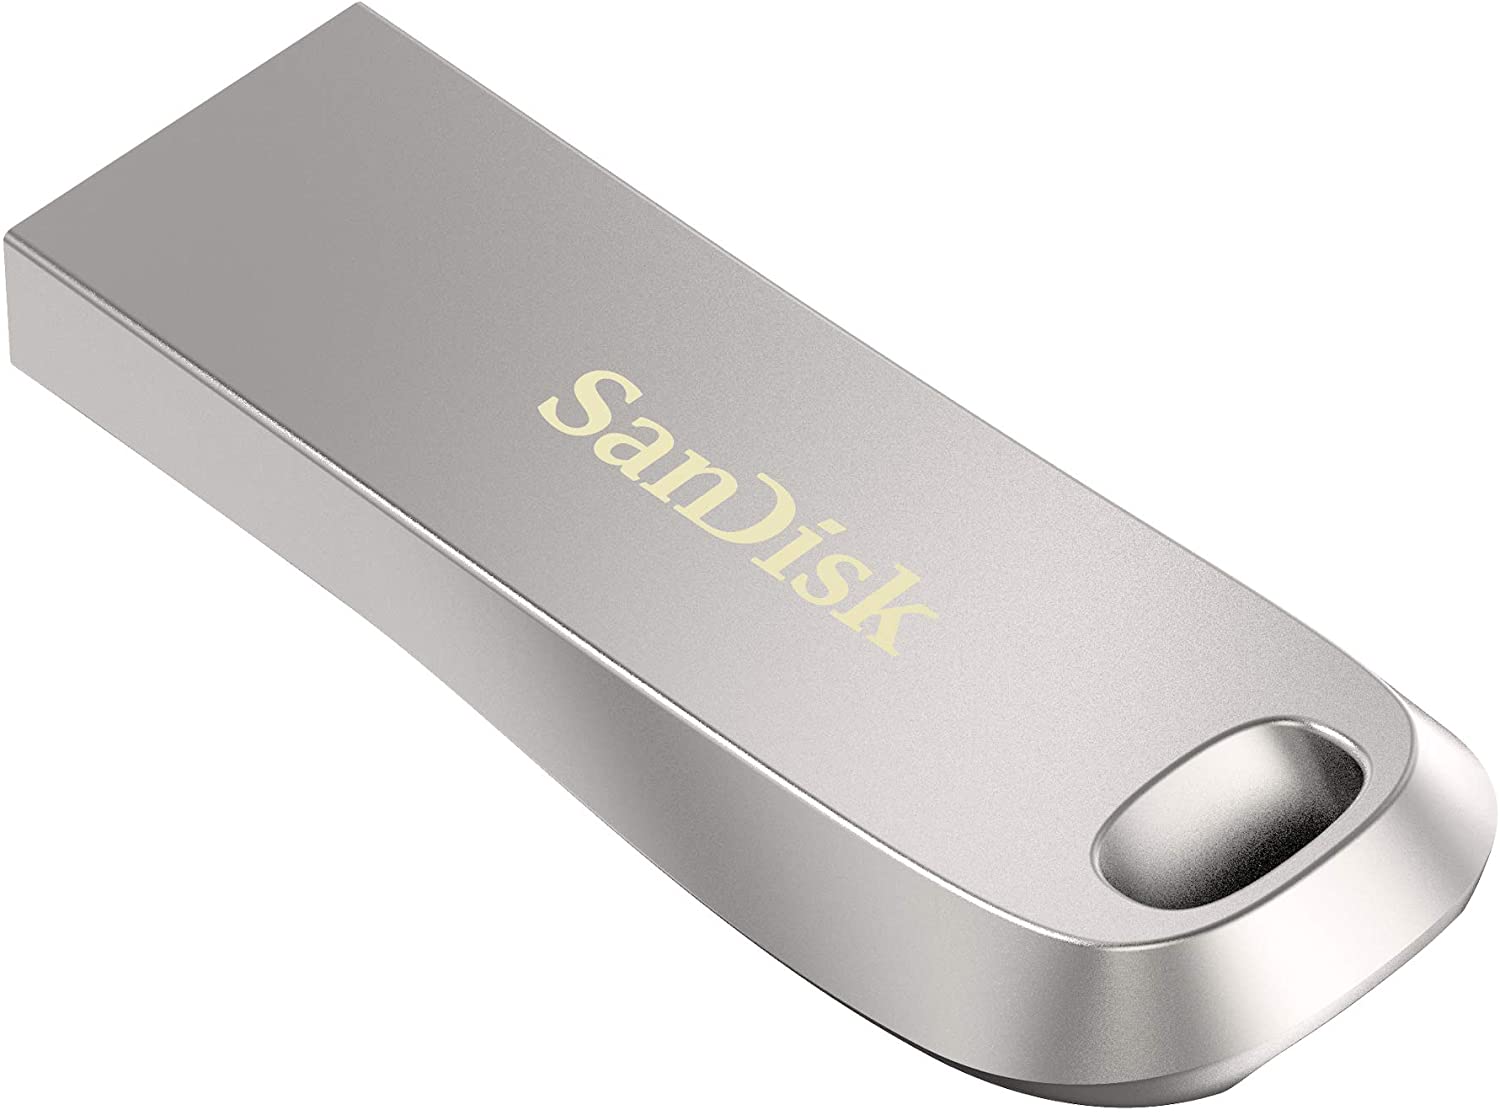 SANDISK USB Flash Drives SDCZ74-032G-Z35